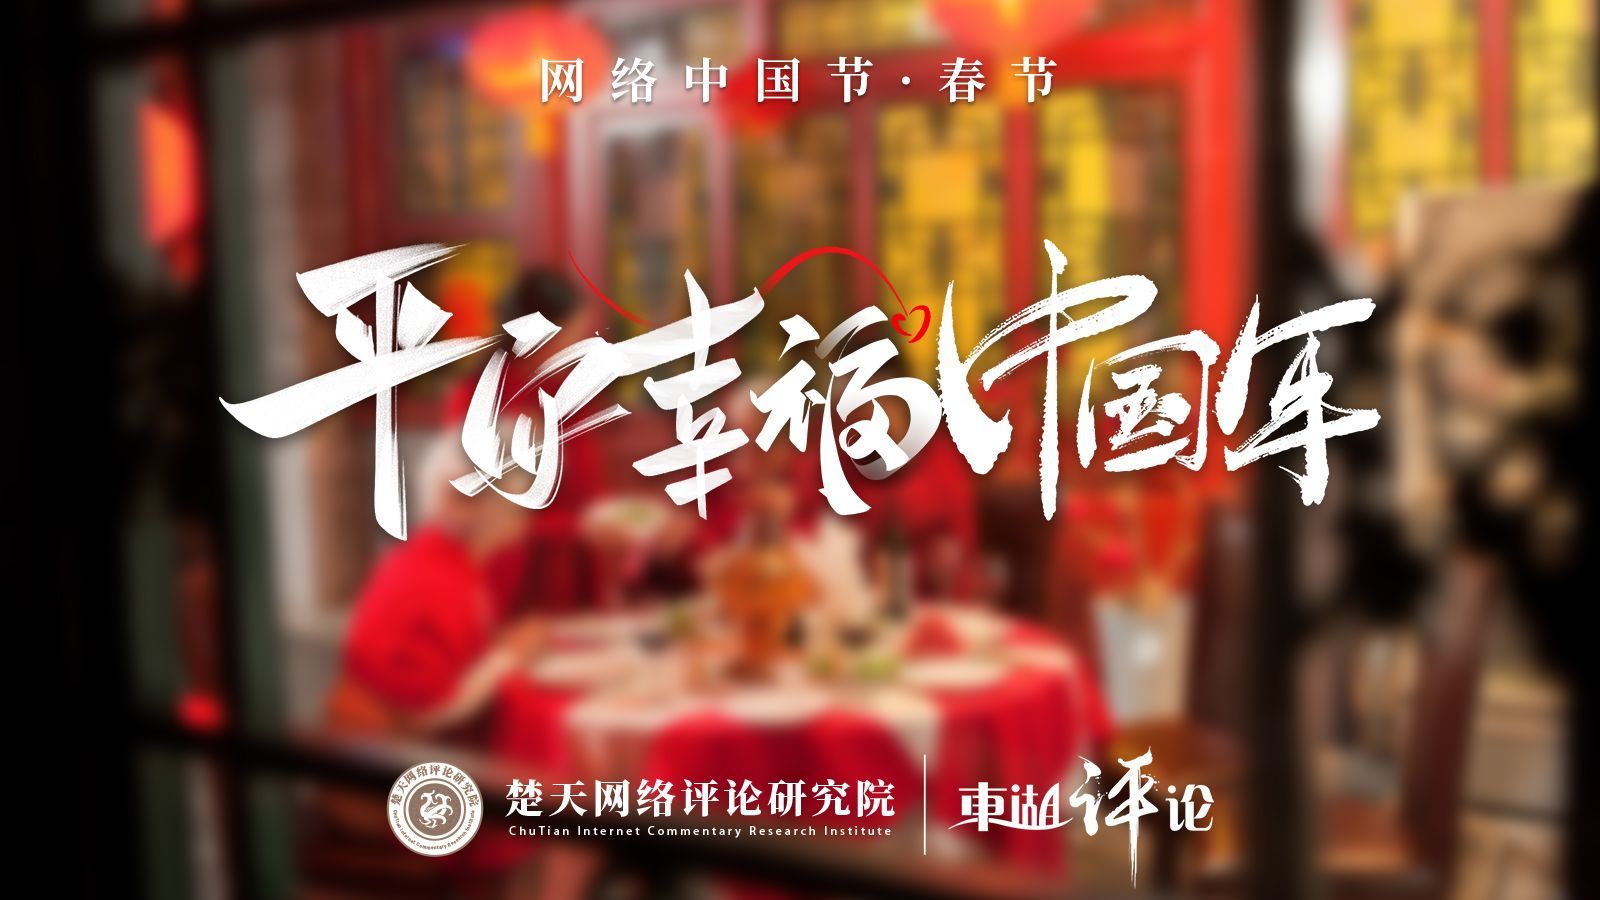 【平安幸福中国年】“用心陪伴”是春节给父母最好的礼物